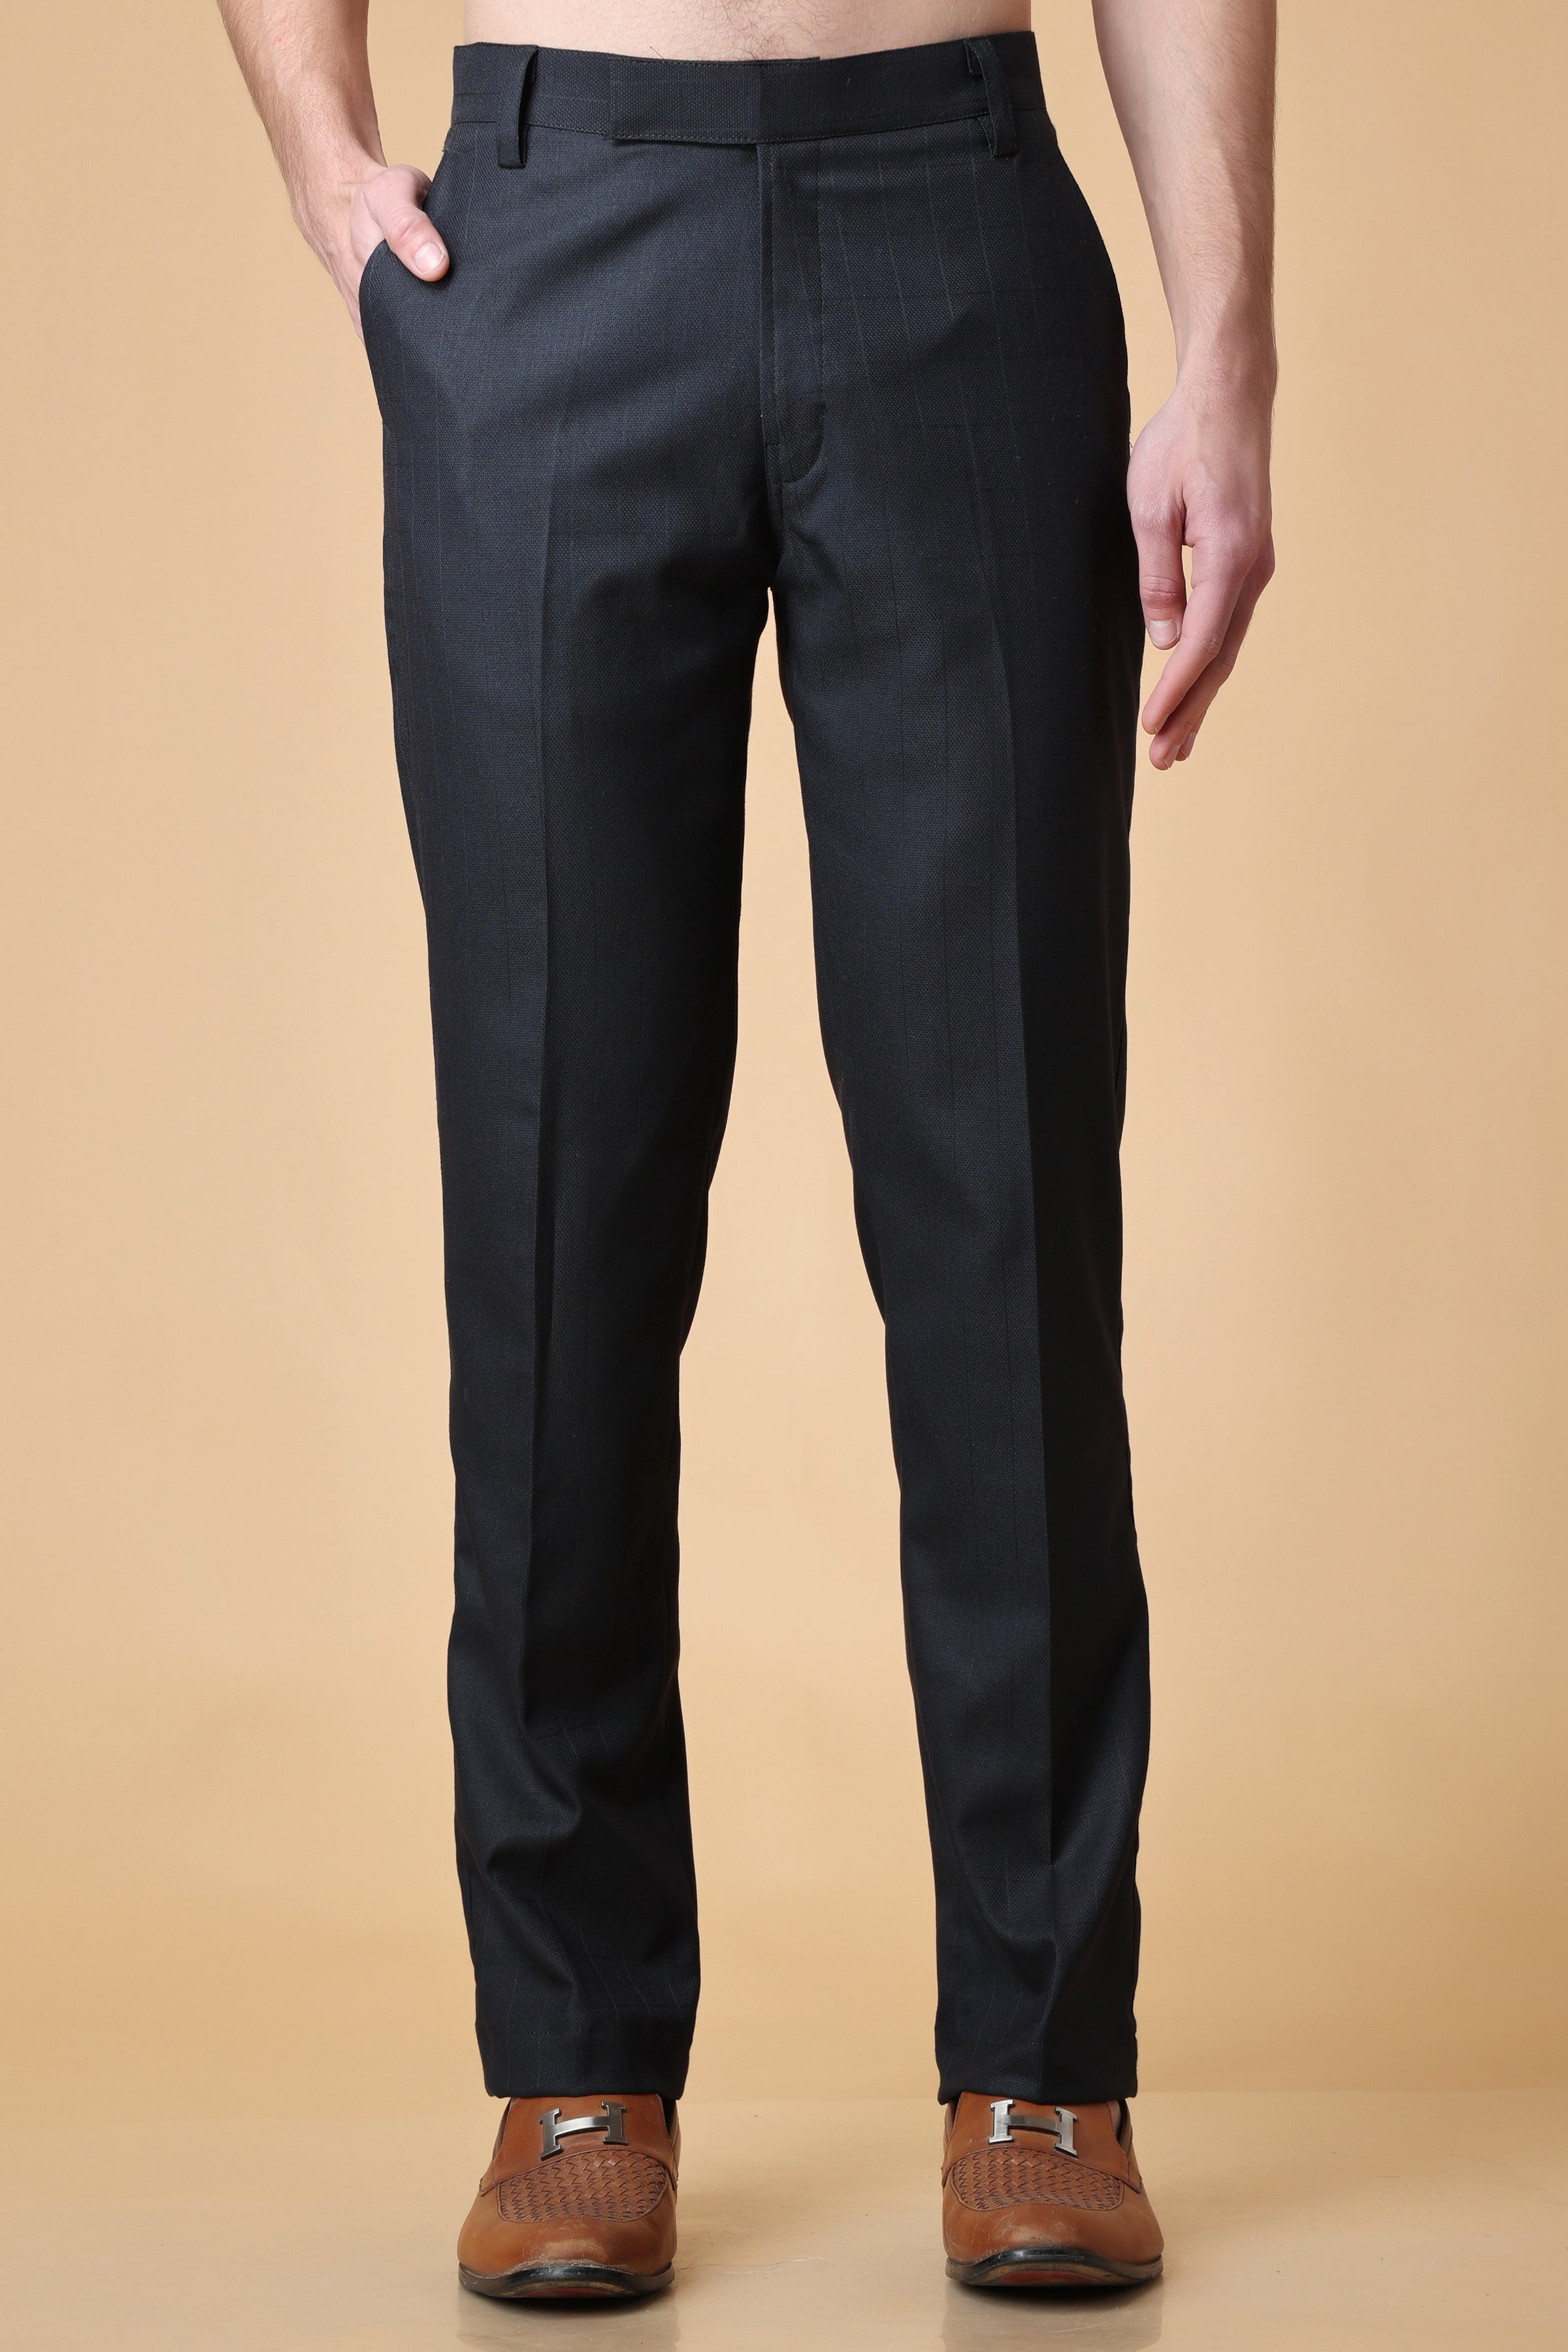 Cotton Women Formal Trouser, Length : Ankle Length, Full Length, Gender :  Female at Rs 350 / Piece in Silvassa